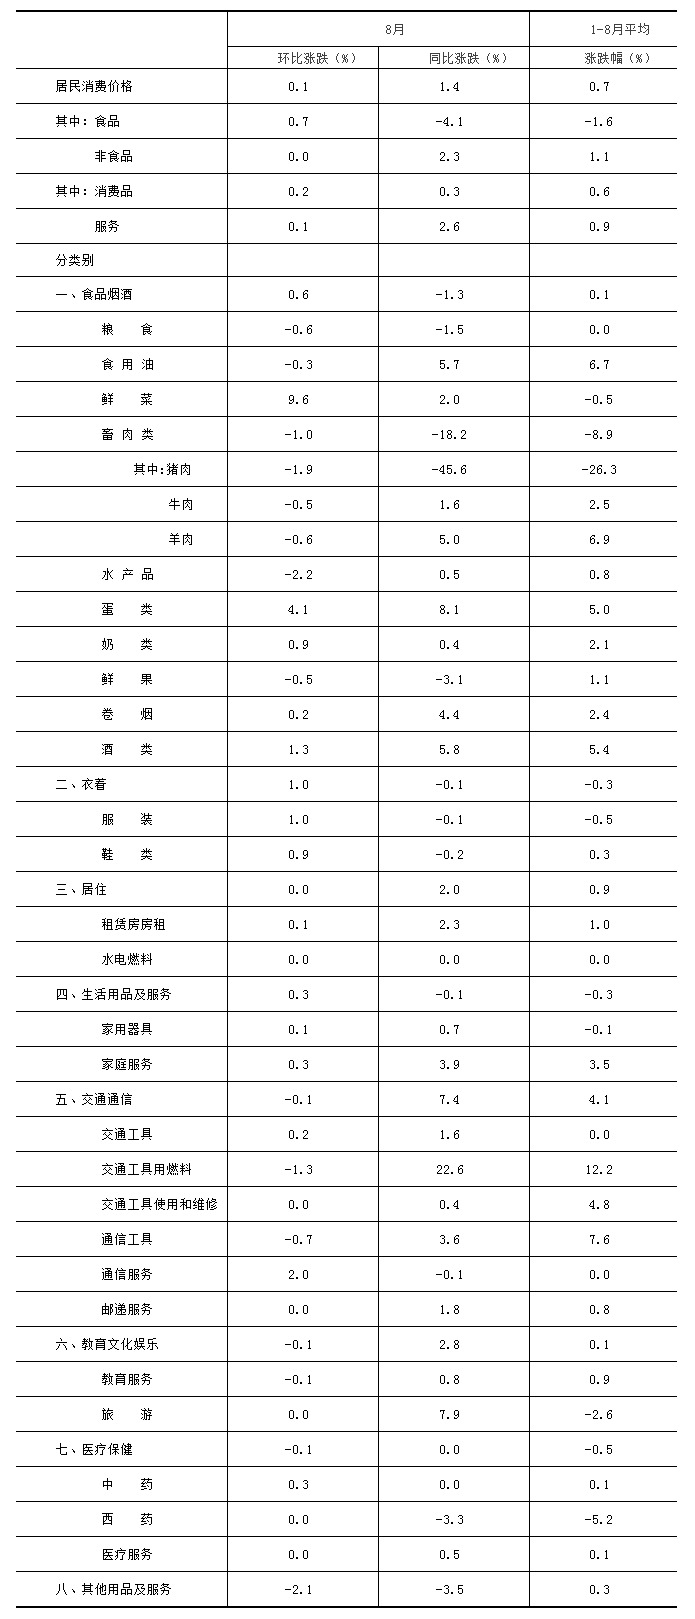 北京8月份居民消费价格总水平环比上涨0.1% 食品价格上涨0.7%